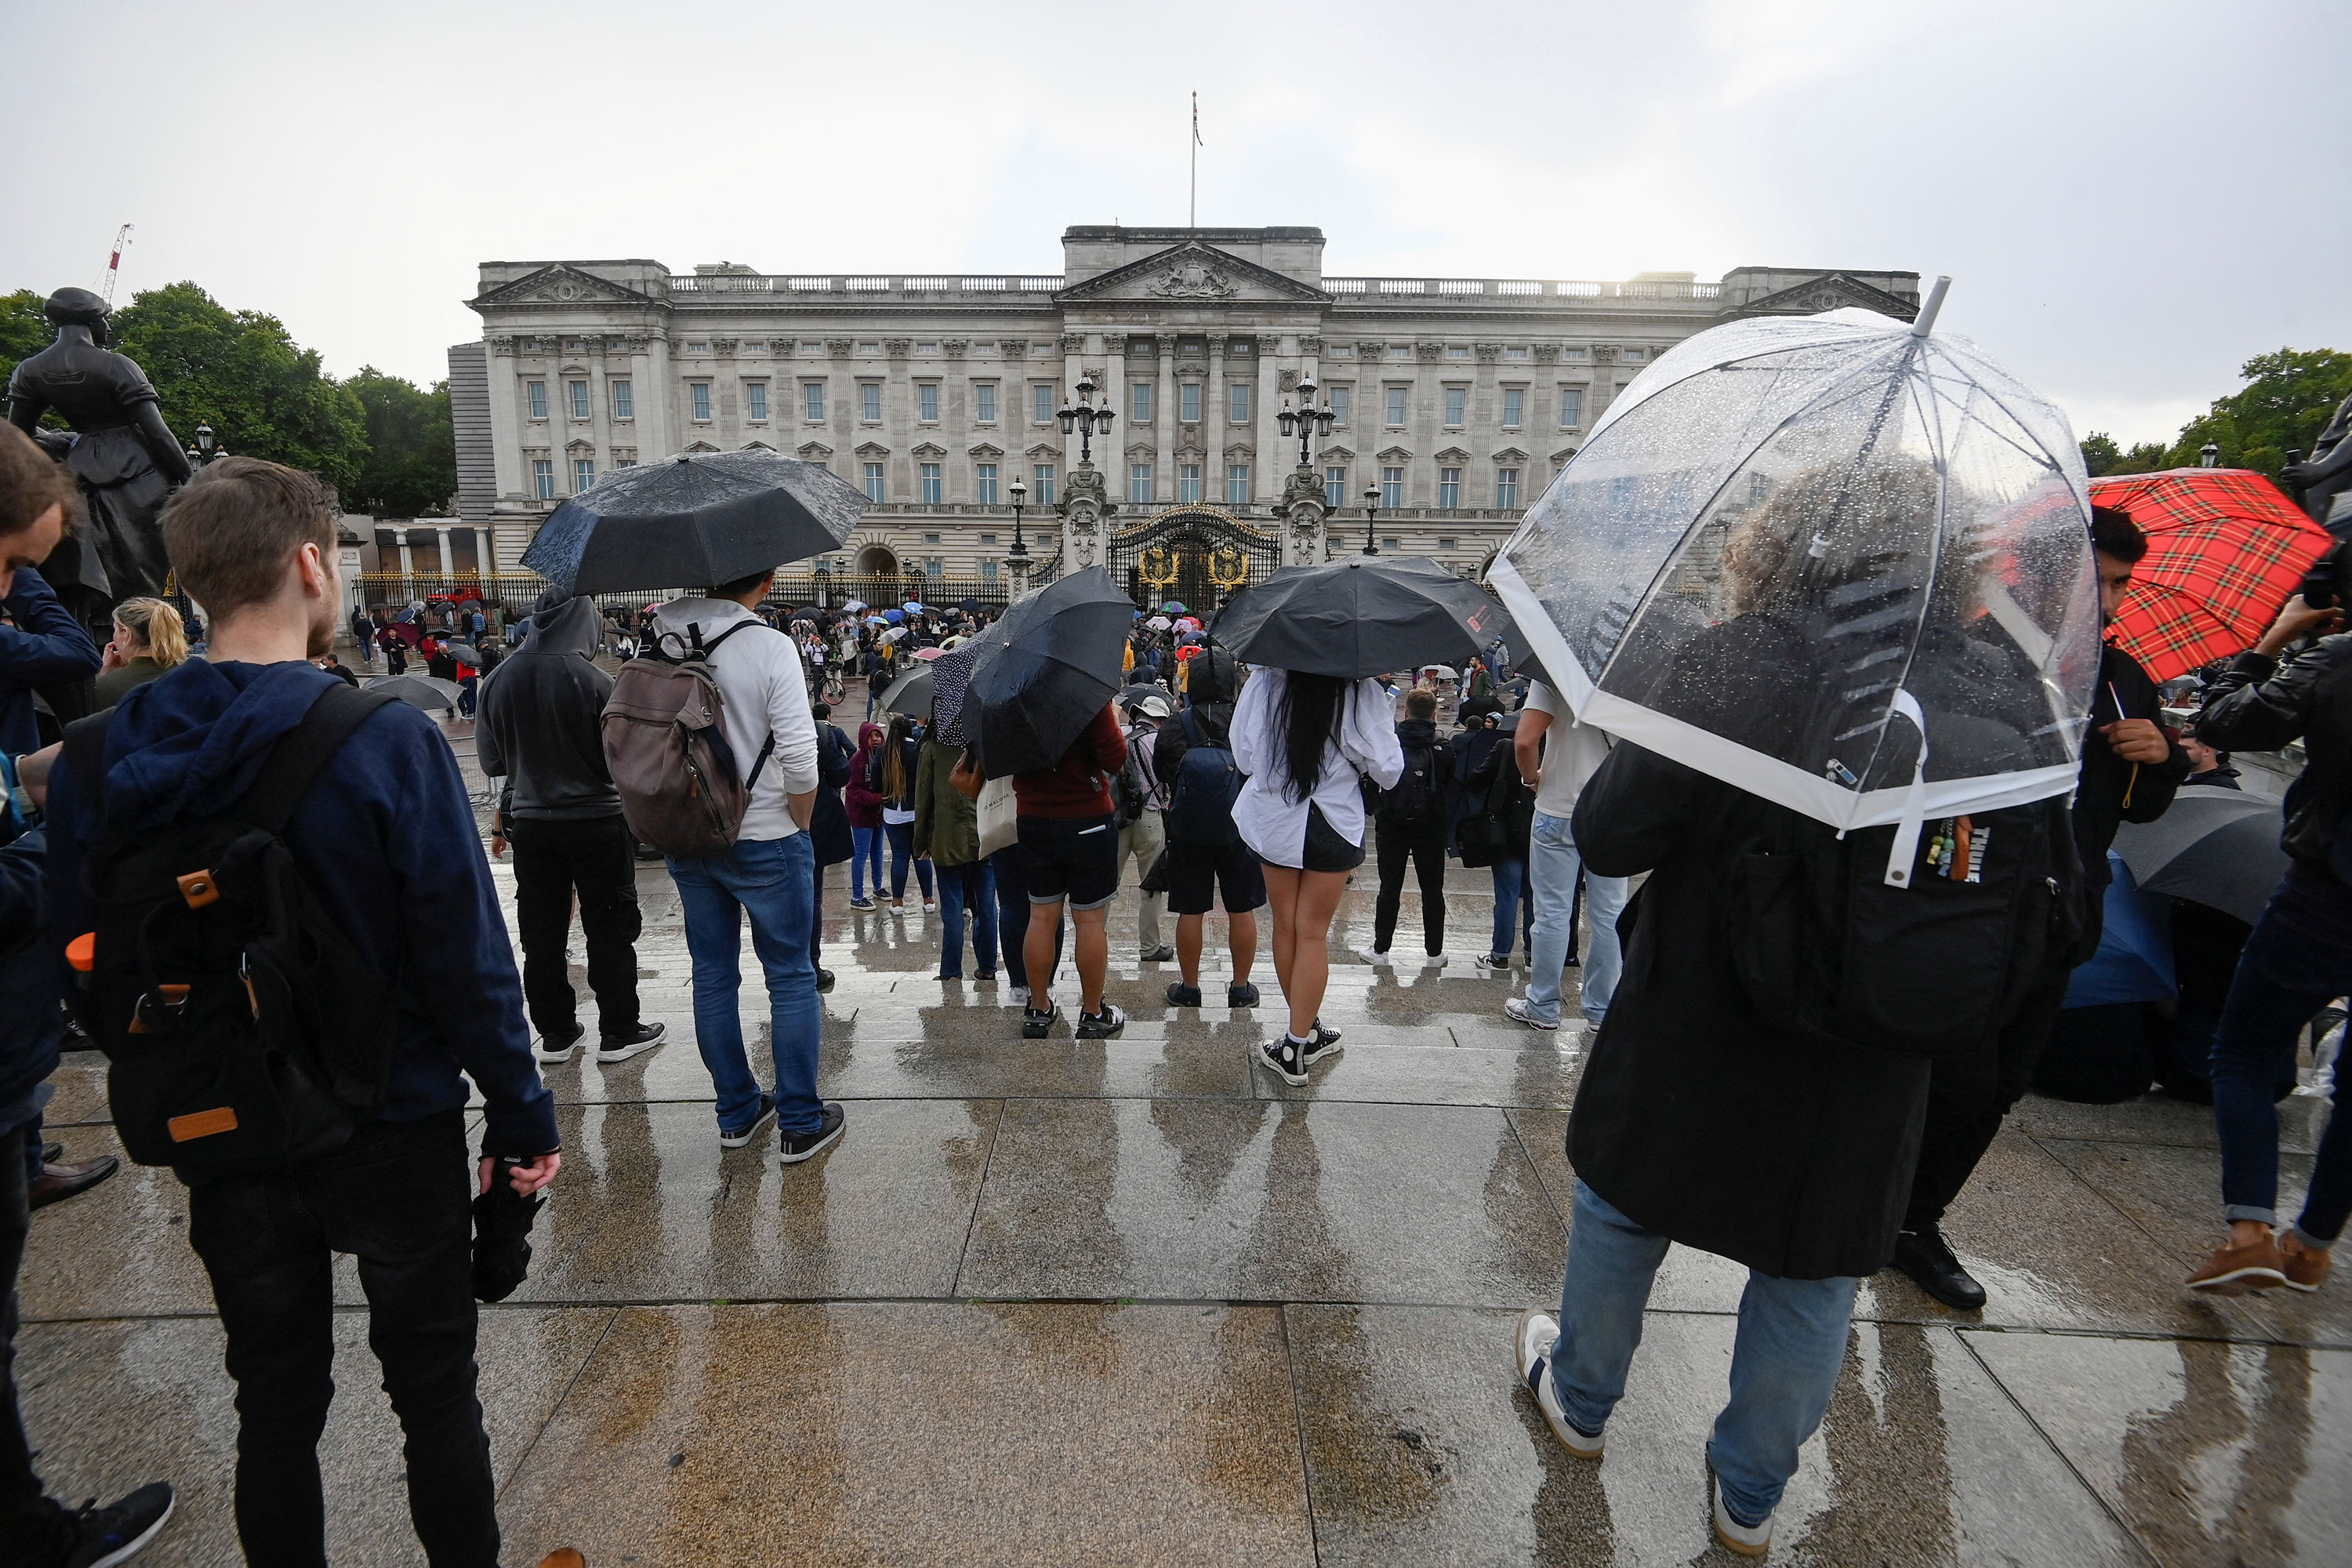 People gather outside Buckingham Palace on Thursday.